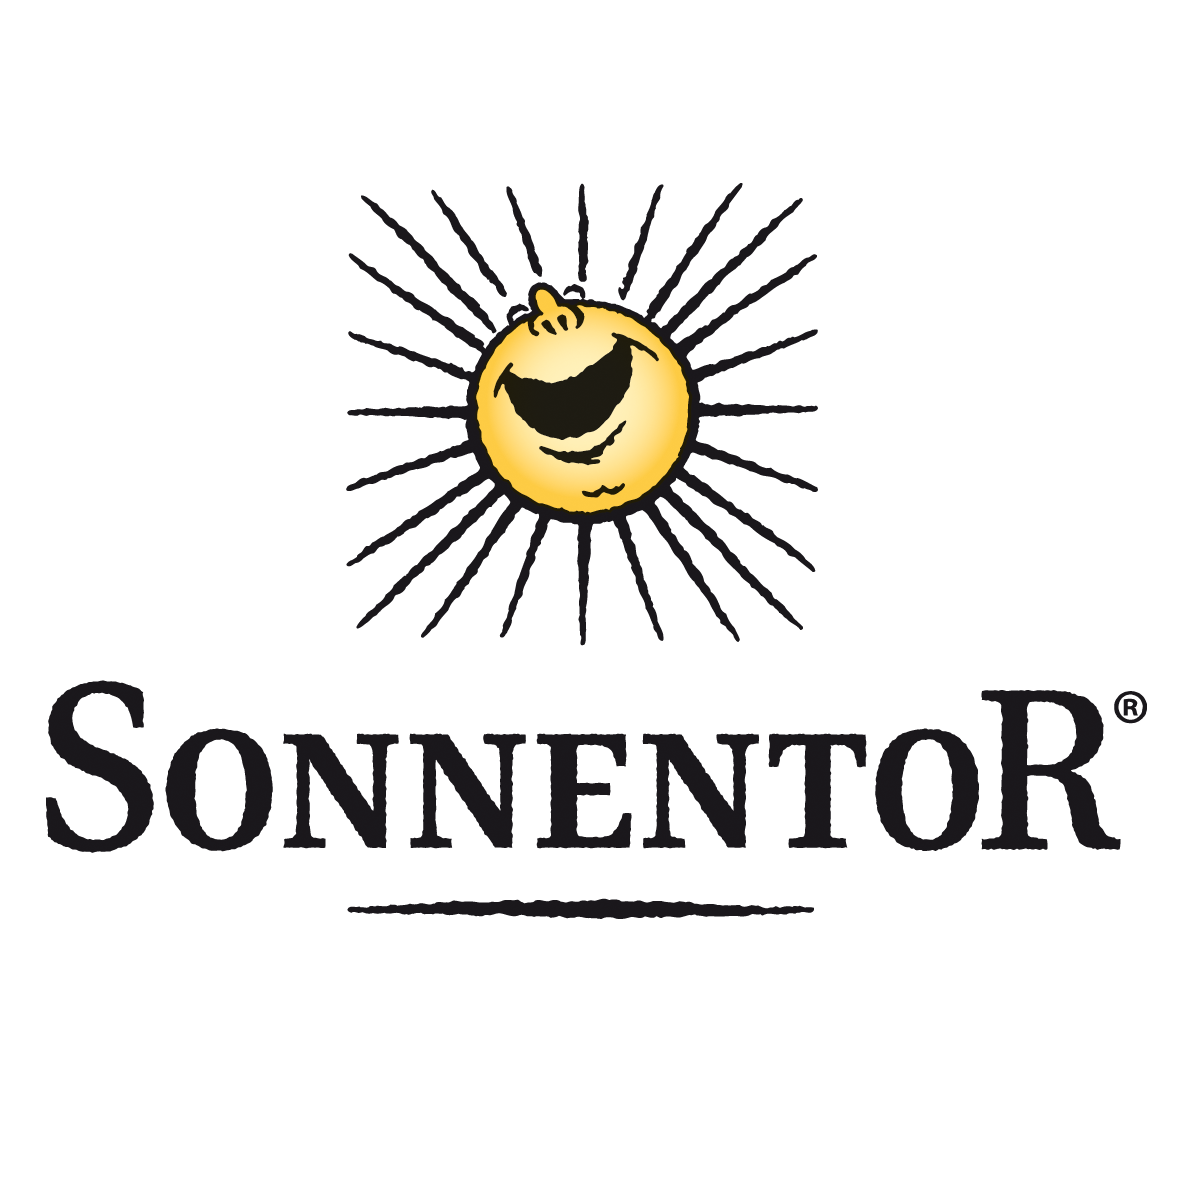 Sonnetor Logo